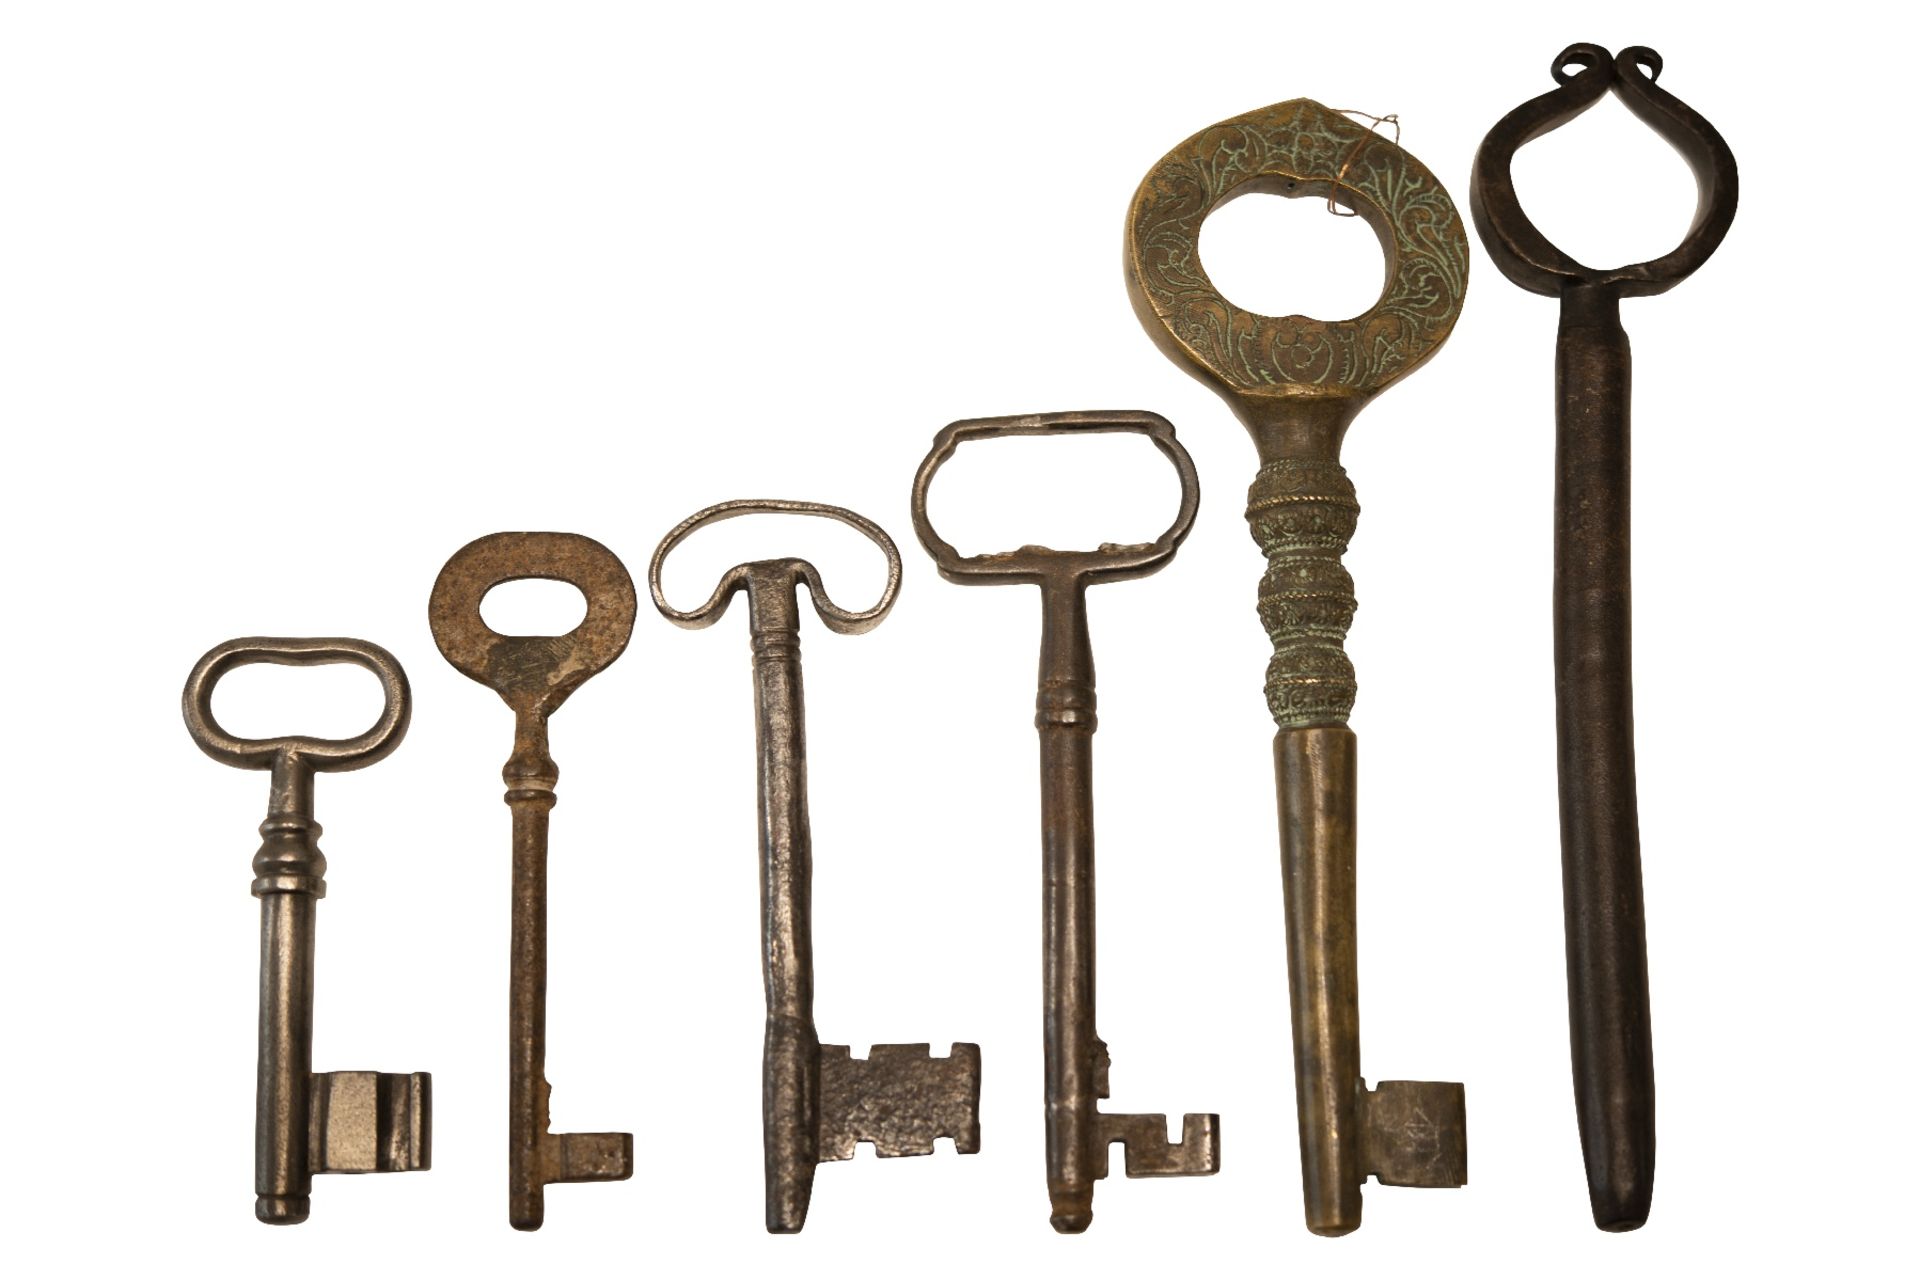 Old Palace Keys - Image 2 of 2